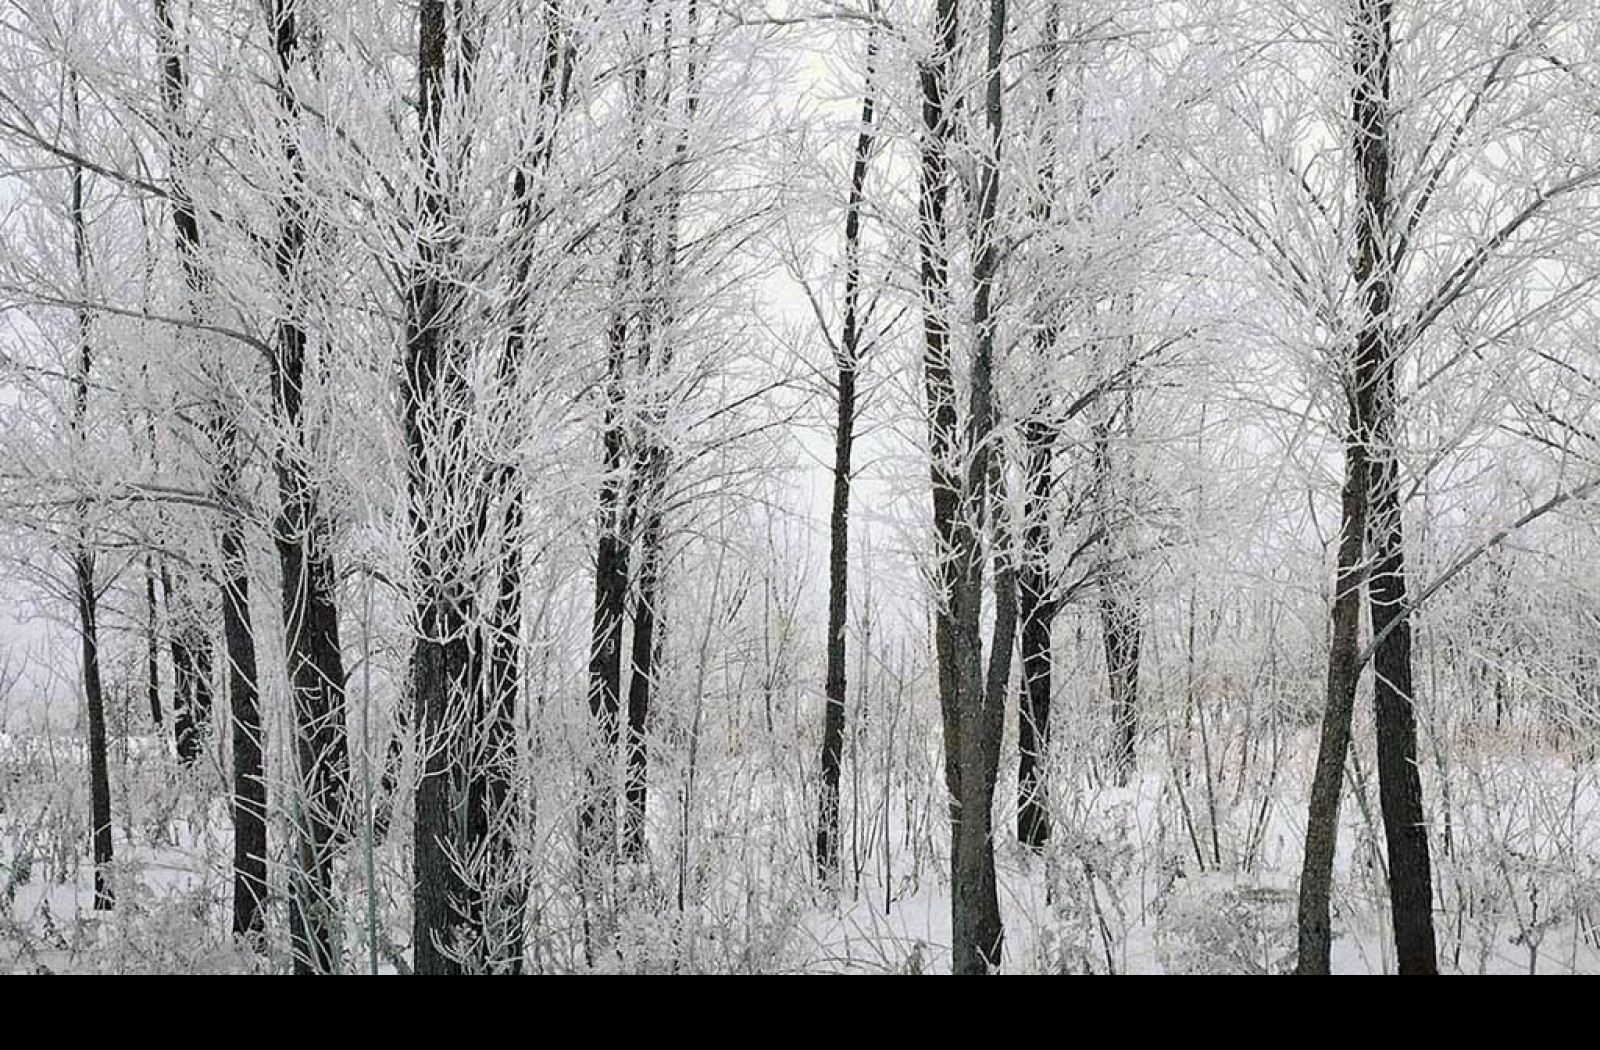 Березки лед. Зимние деревья и кустарники. Лиственные леса зимой. Зимнее дерево. Зима в лесу.